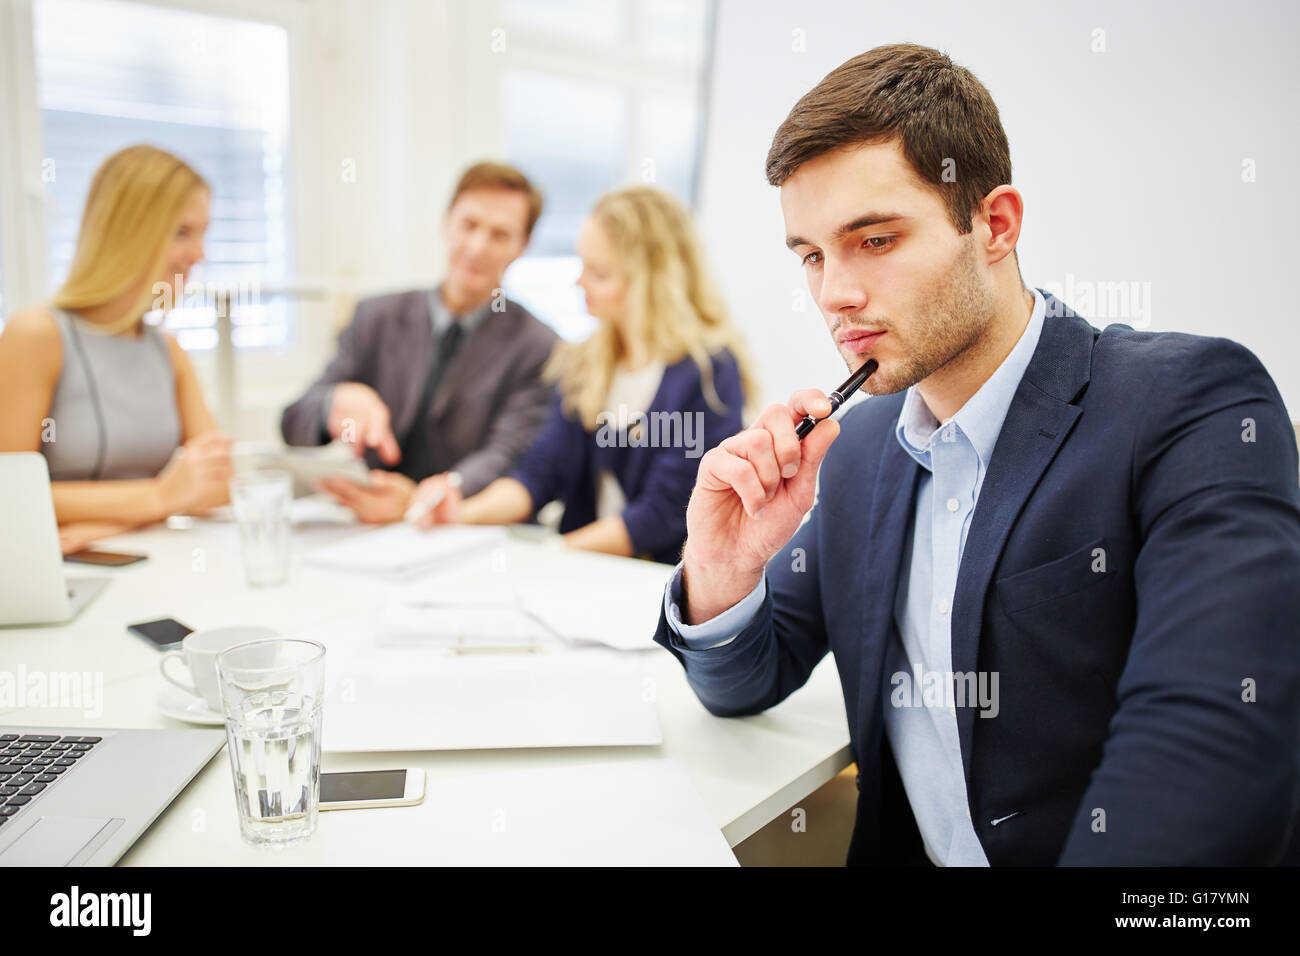 Young businessman looking pensive dans une réunion d'affaires Banque D'Images